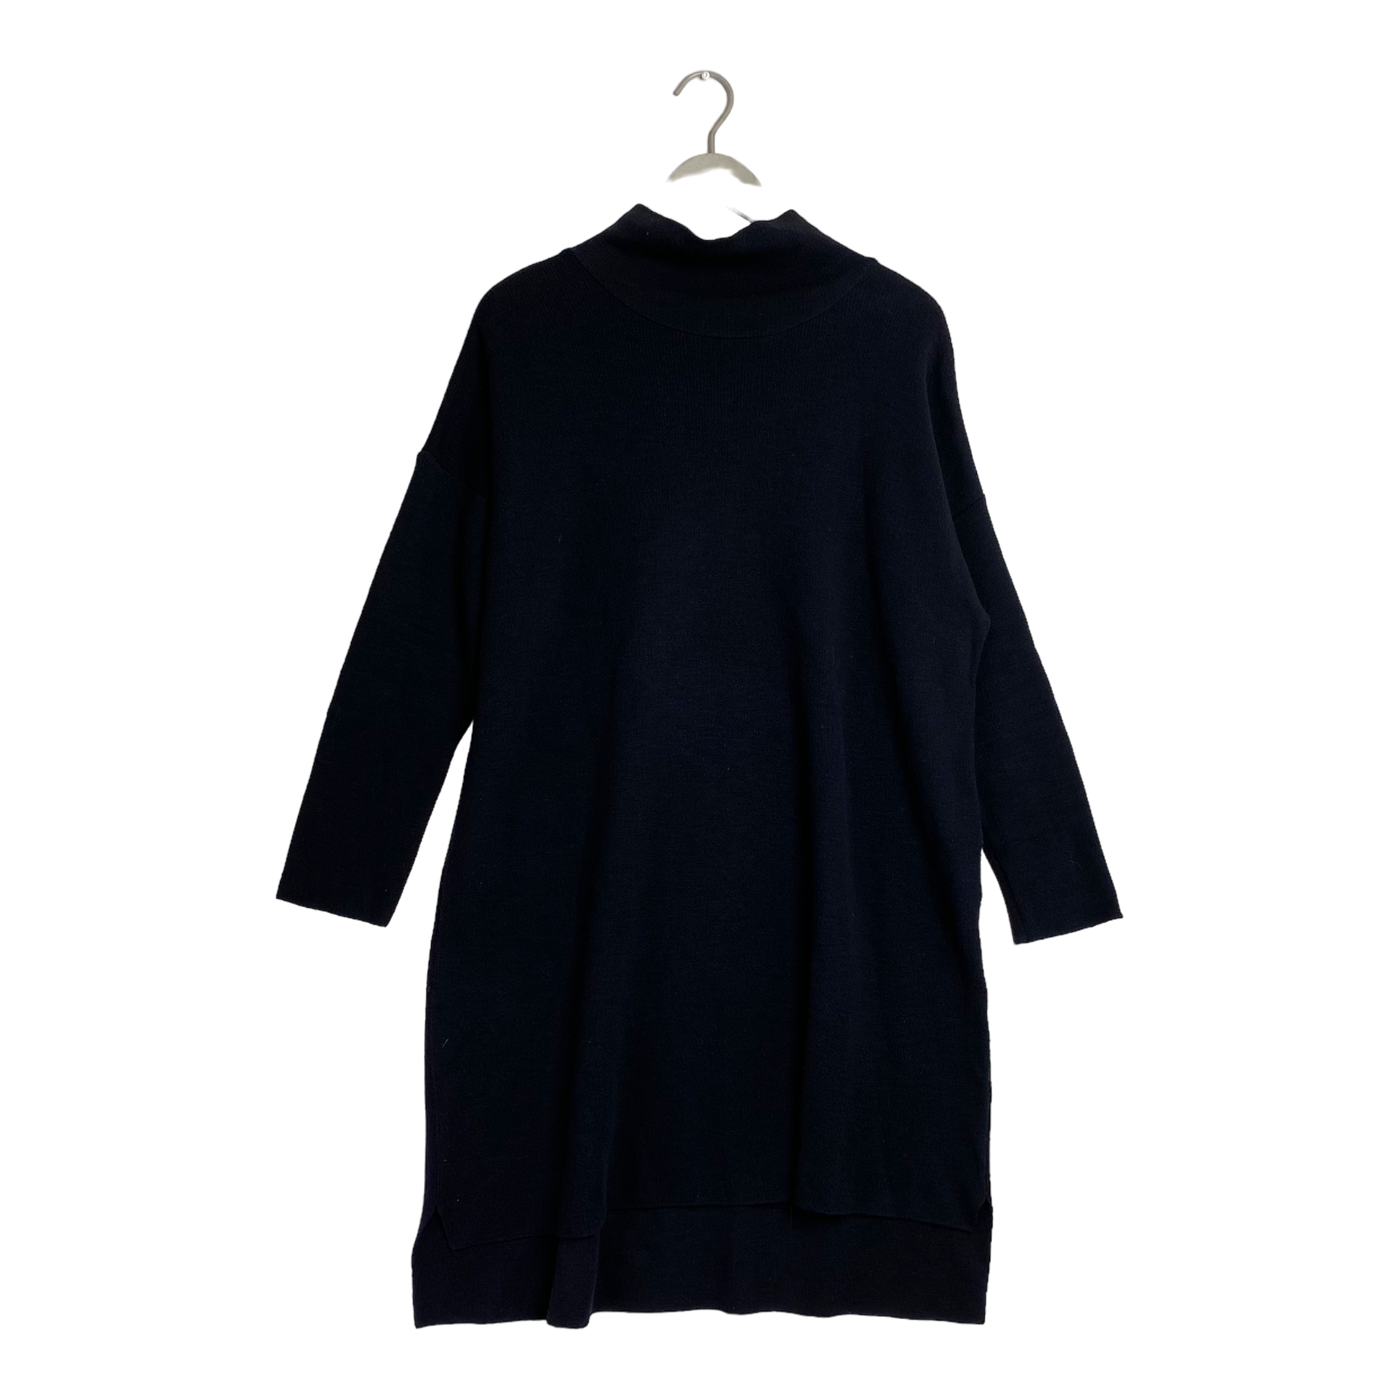 Papu knitted dress, black | woman XS/S